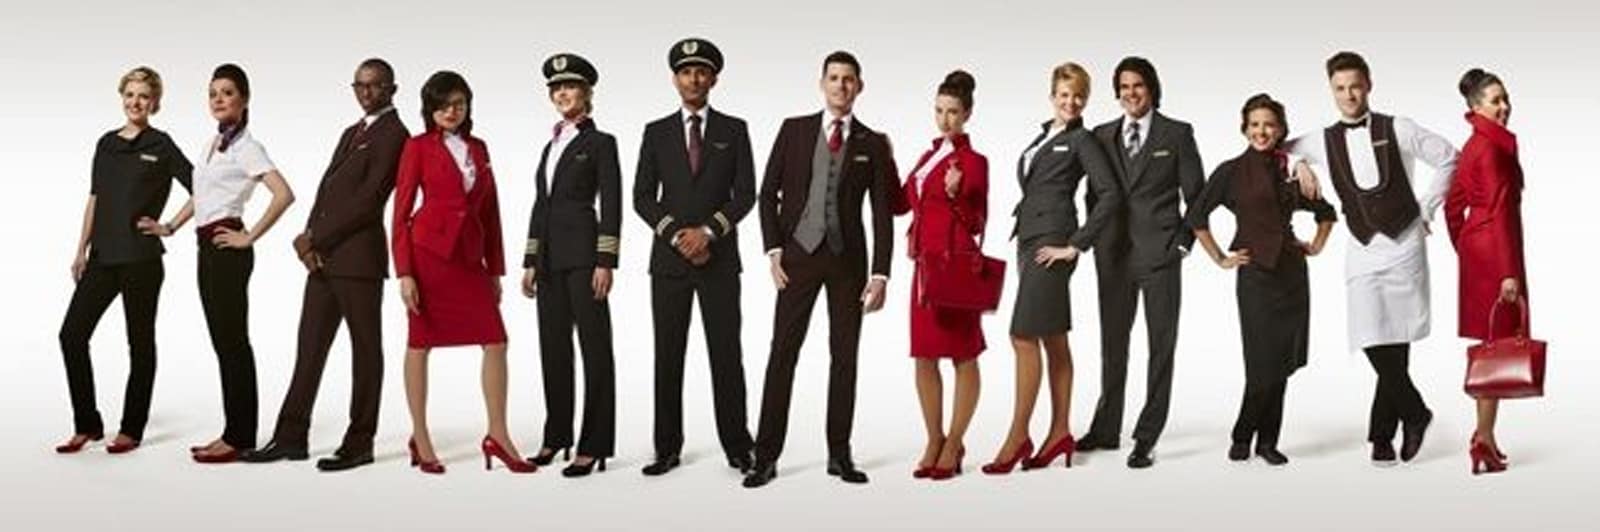 13 Virgin Atlantic employees showing the Virgin Atlantic uniform designed by Vivienne Westwood